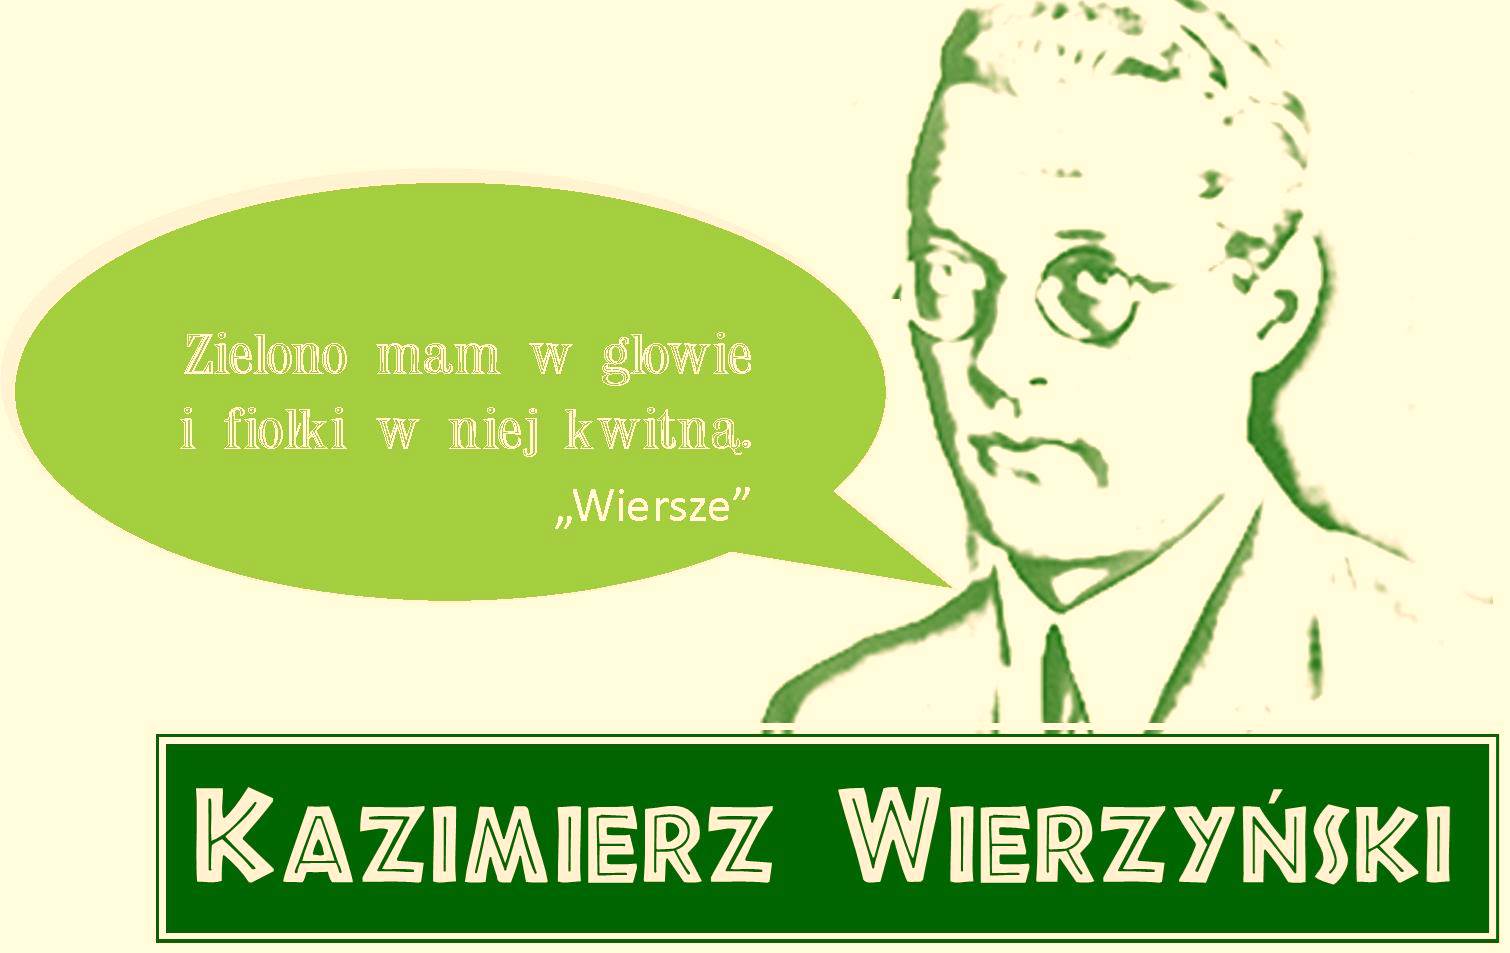 Kolor zielony i biały, zarys twarzy Kazimierza Wierzyńskiego, tekst zielono mam w głowie i fiołki w niej kwitną